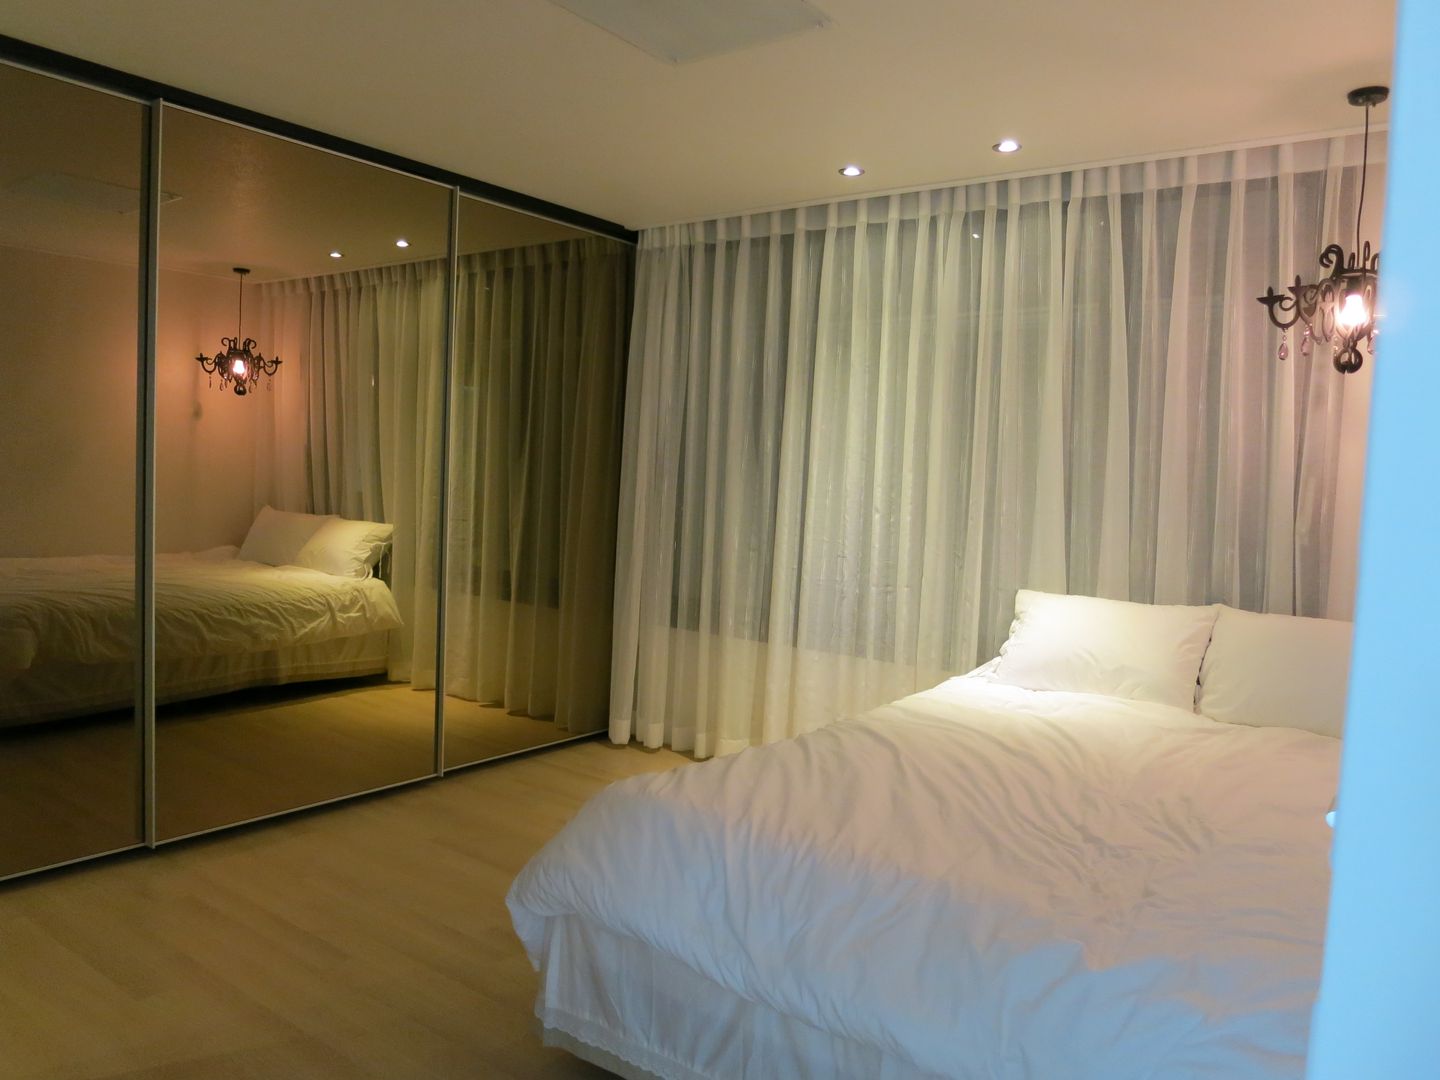 실용적인 수납과 공간활용 32py, 홍예디자인 홍예디자인 غرفة نوم